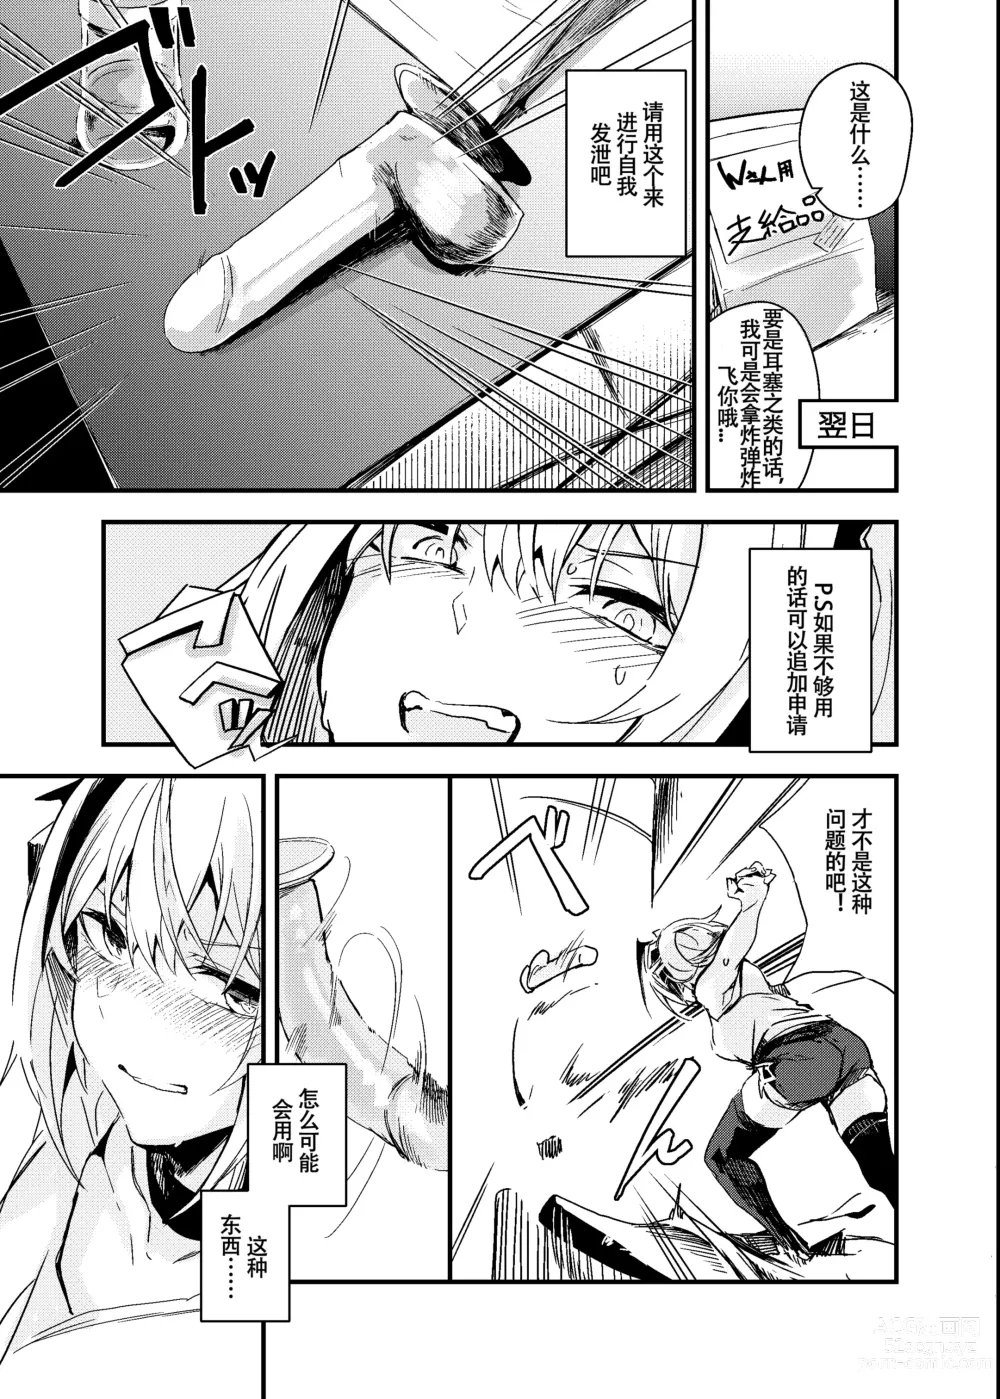 Page 6 of doujinshi 睡不着的炸弹狂人W酱~!